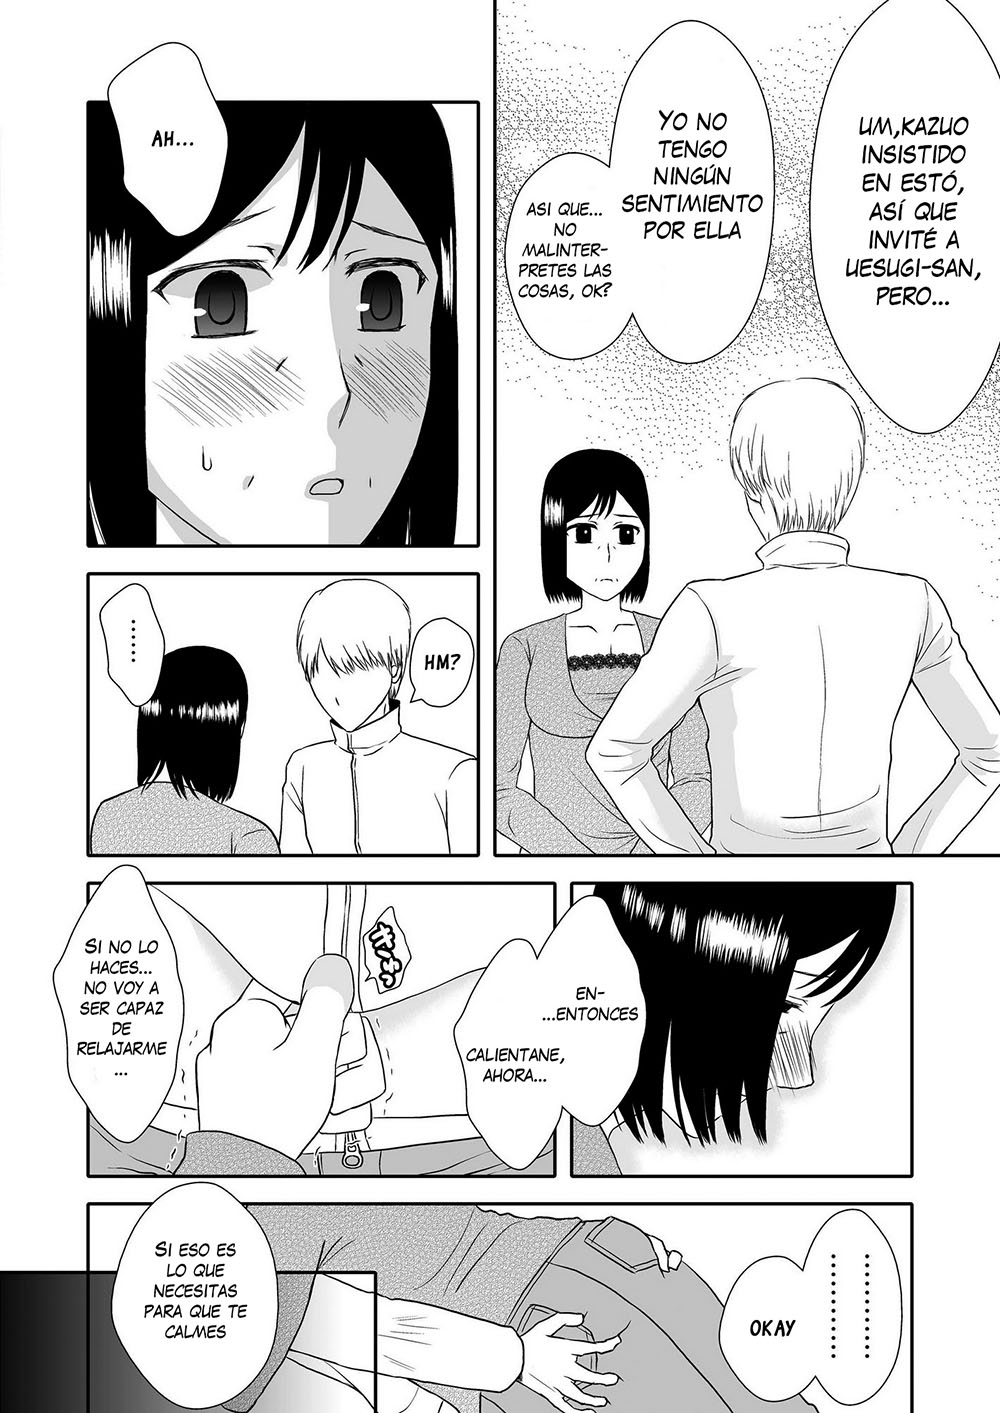 Kaa-san to Koibito Seikatsu #2 - 11 - Comics Porno - Hentai Manga - Cartoon XXX